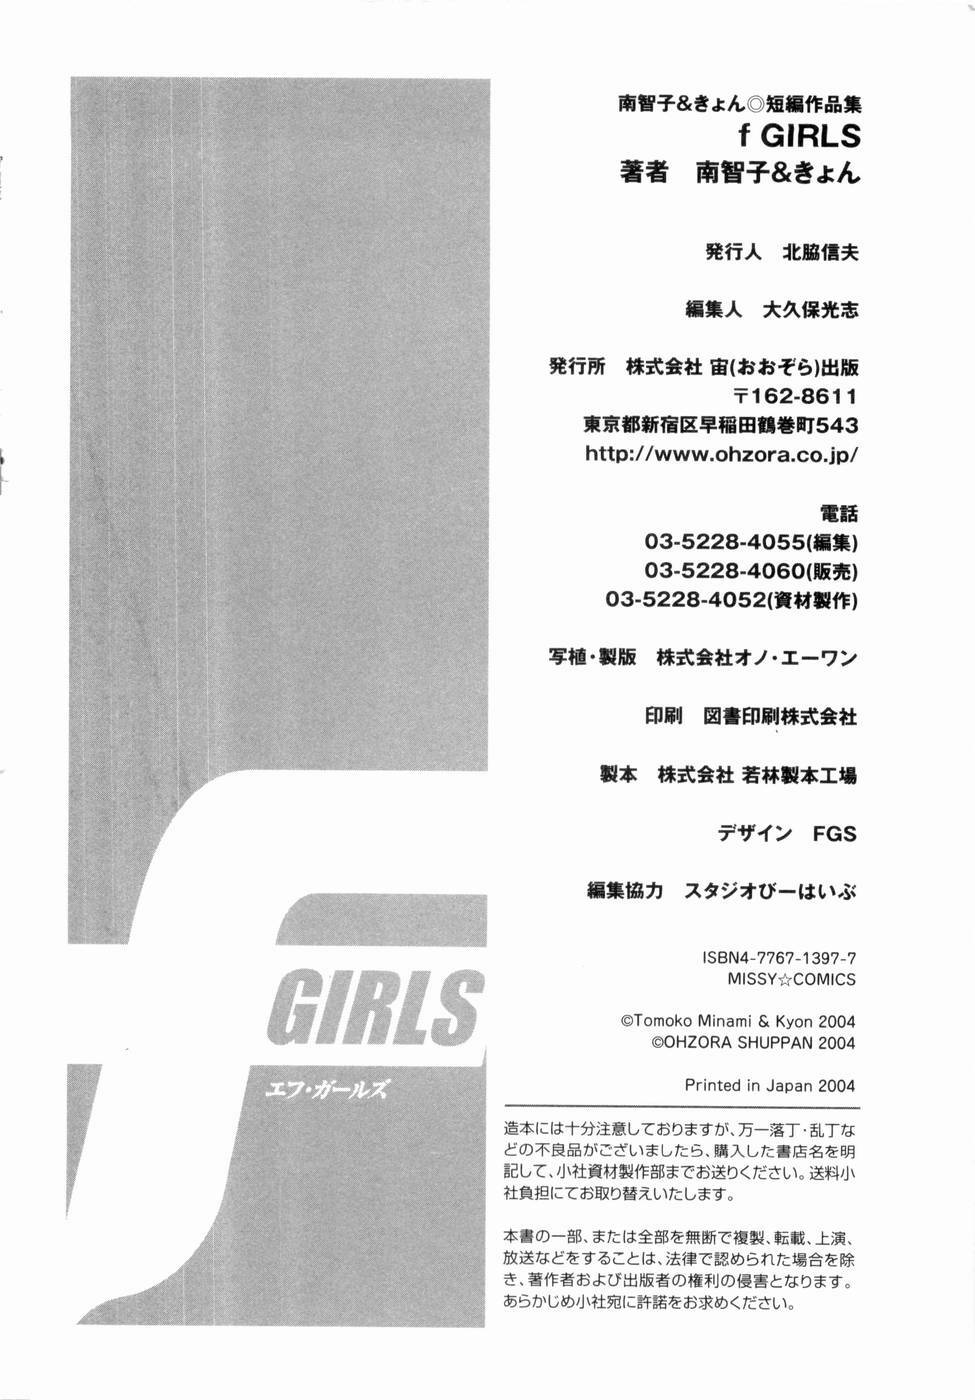 [Minami Tomoko, Kyon] F Girls page 181 full